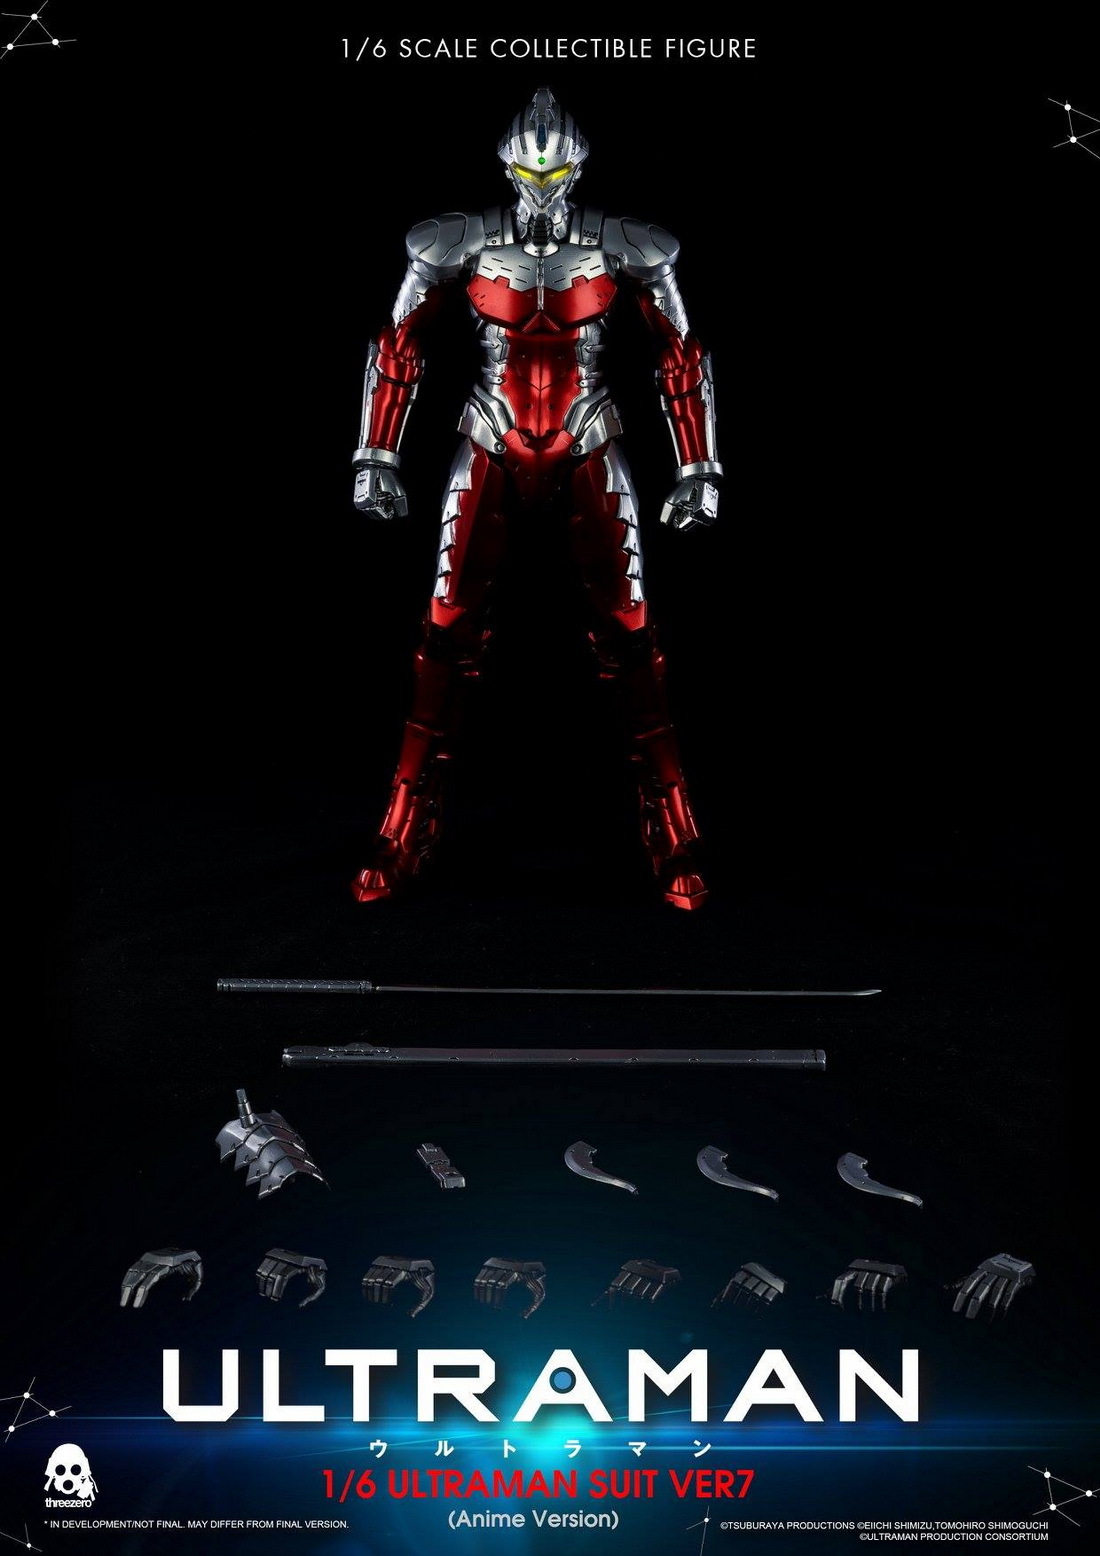 Ultraman Suit figure: Với Ultraman Suit figure, bạn sẽ được chiêm ngưỡng những chi tiết tuyệt đẹp của nhân vật siêu nhân nổi tiếng này. Với độ chân thực tuyệt đối, Ultraman Suit figure sẽ trở thành điểm nhấn lý tưởng cho bất kì tín đồ siêu nhân nào.